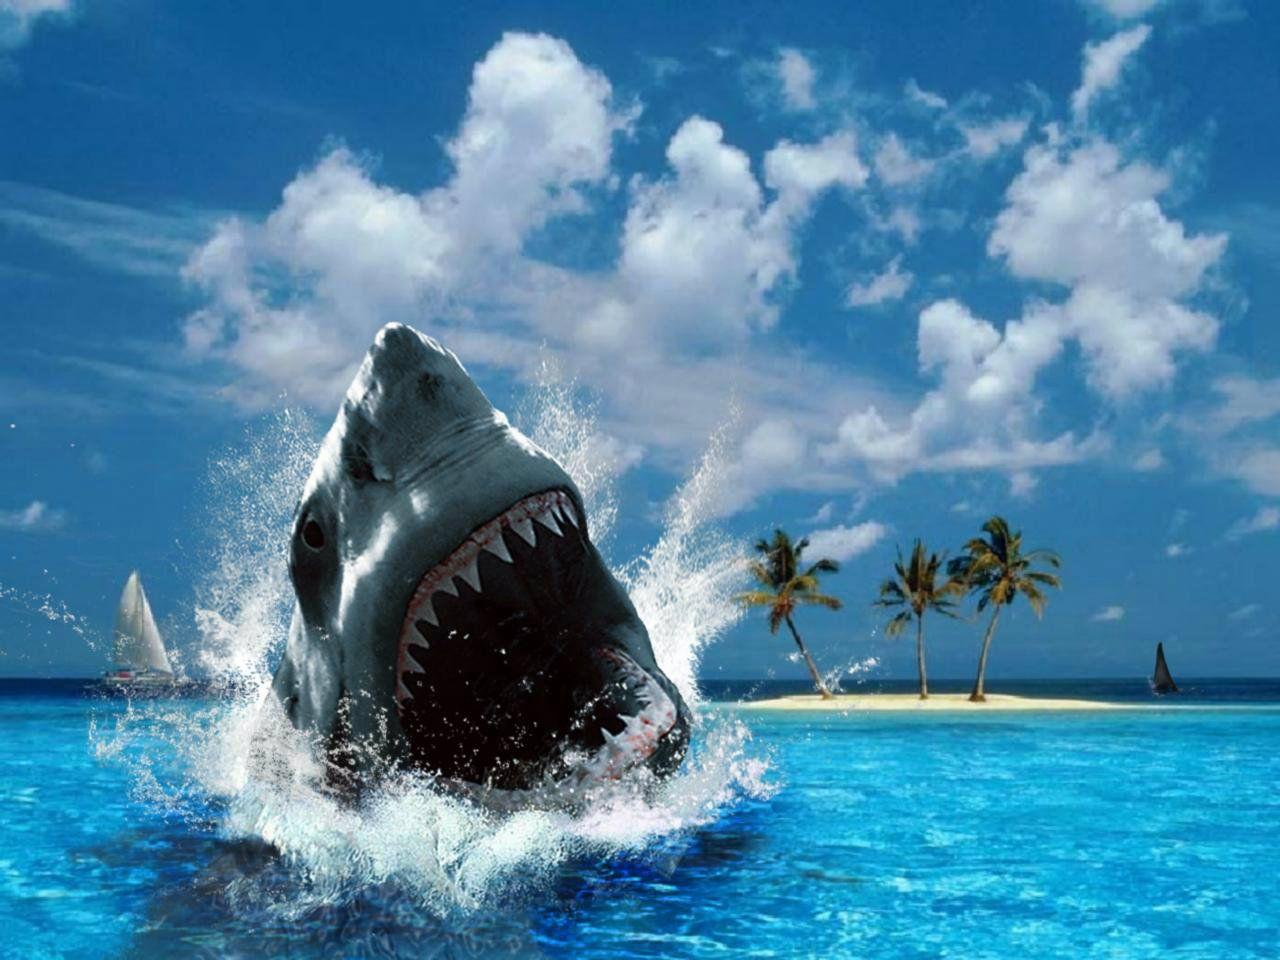 Wallpaper Cool: Free Shark Desktop #wallpaper